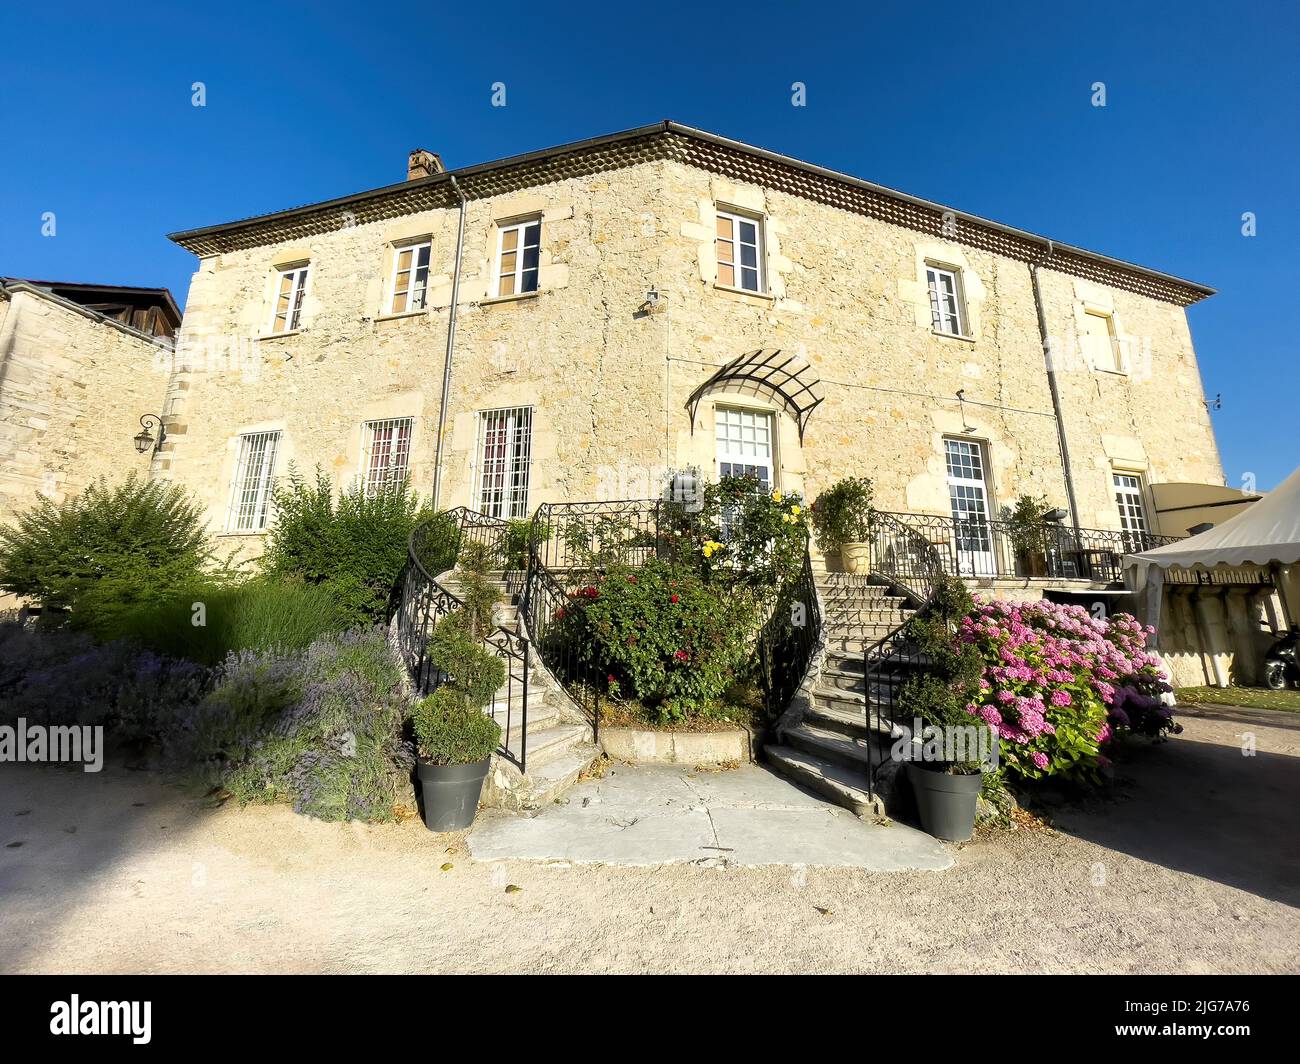 Main building of Chateau de Chapeau Cornu, Vignieu, Departement Isere, Region Auvergne-Rhone-Alpes, France Stock Photo